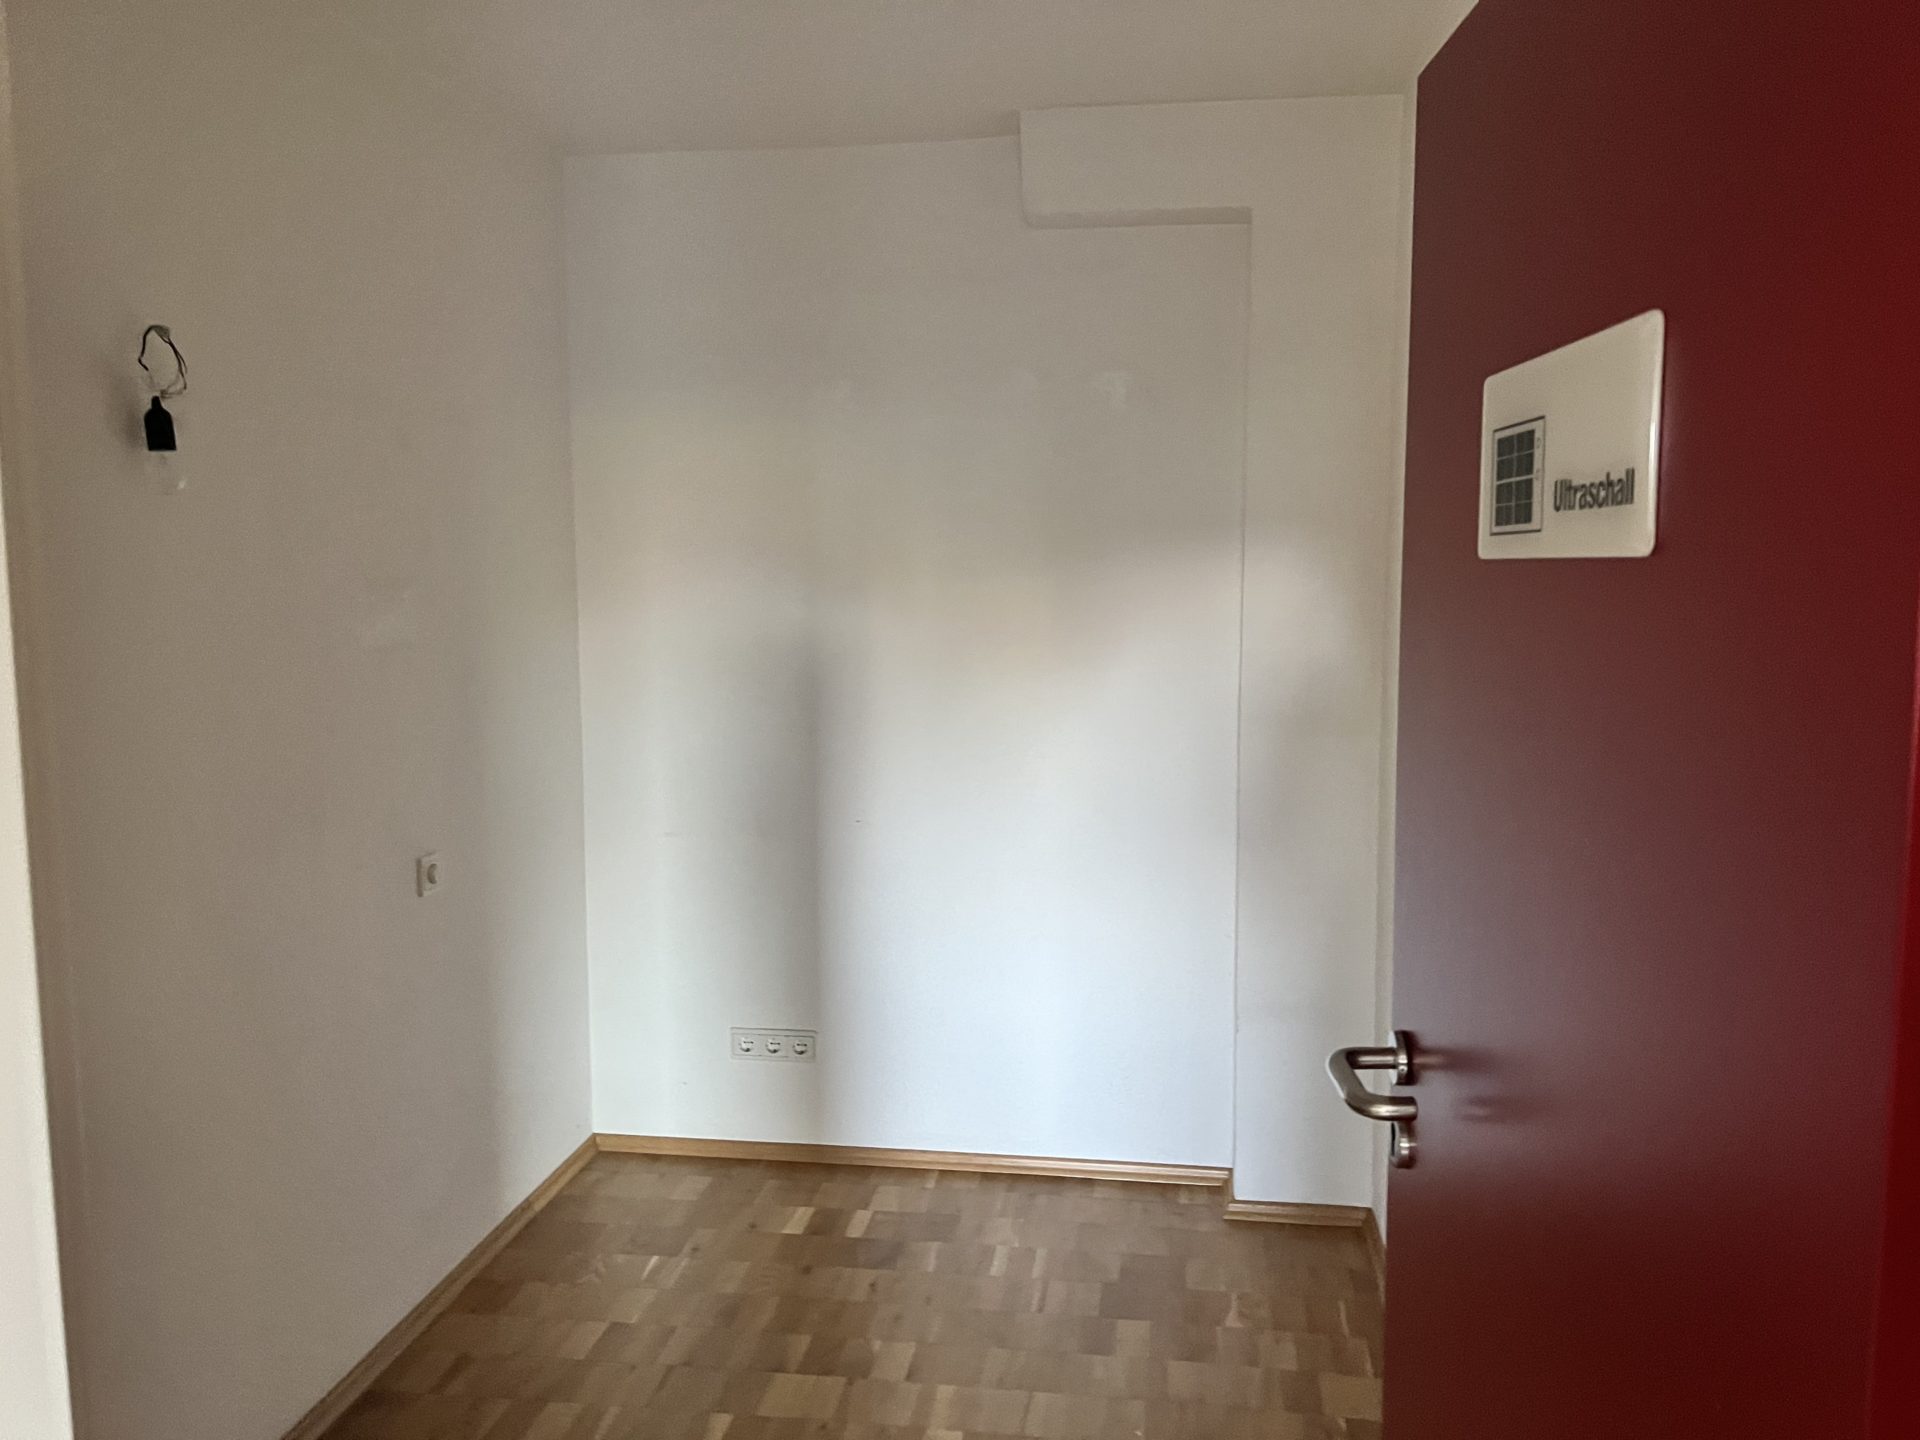 Bonn-Lannesdorf: Praxis-/Büroräume mit Blick auf den Petersberg zu vermieten